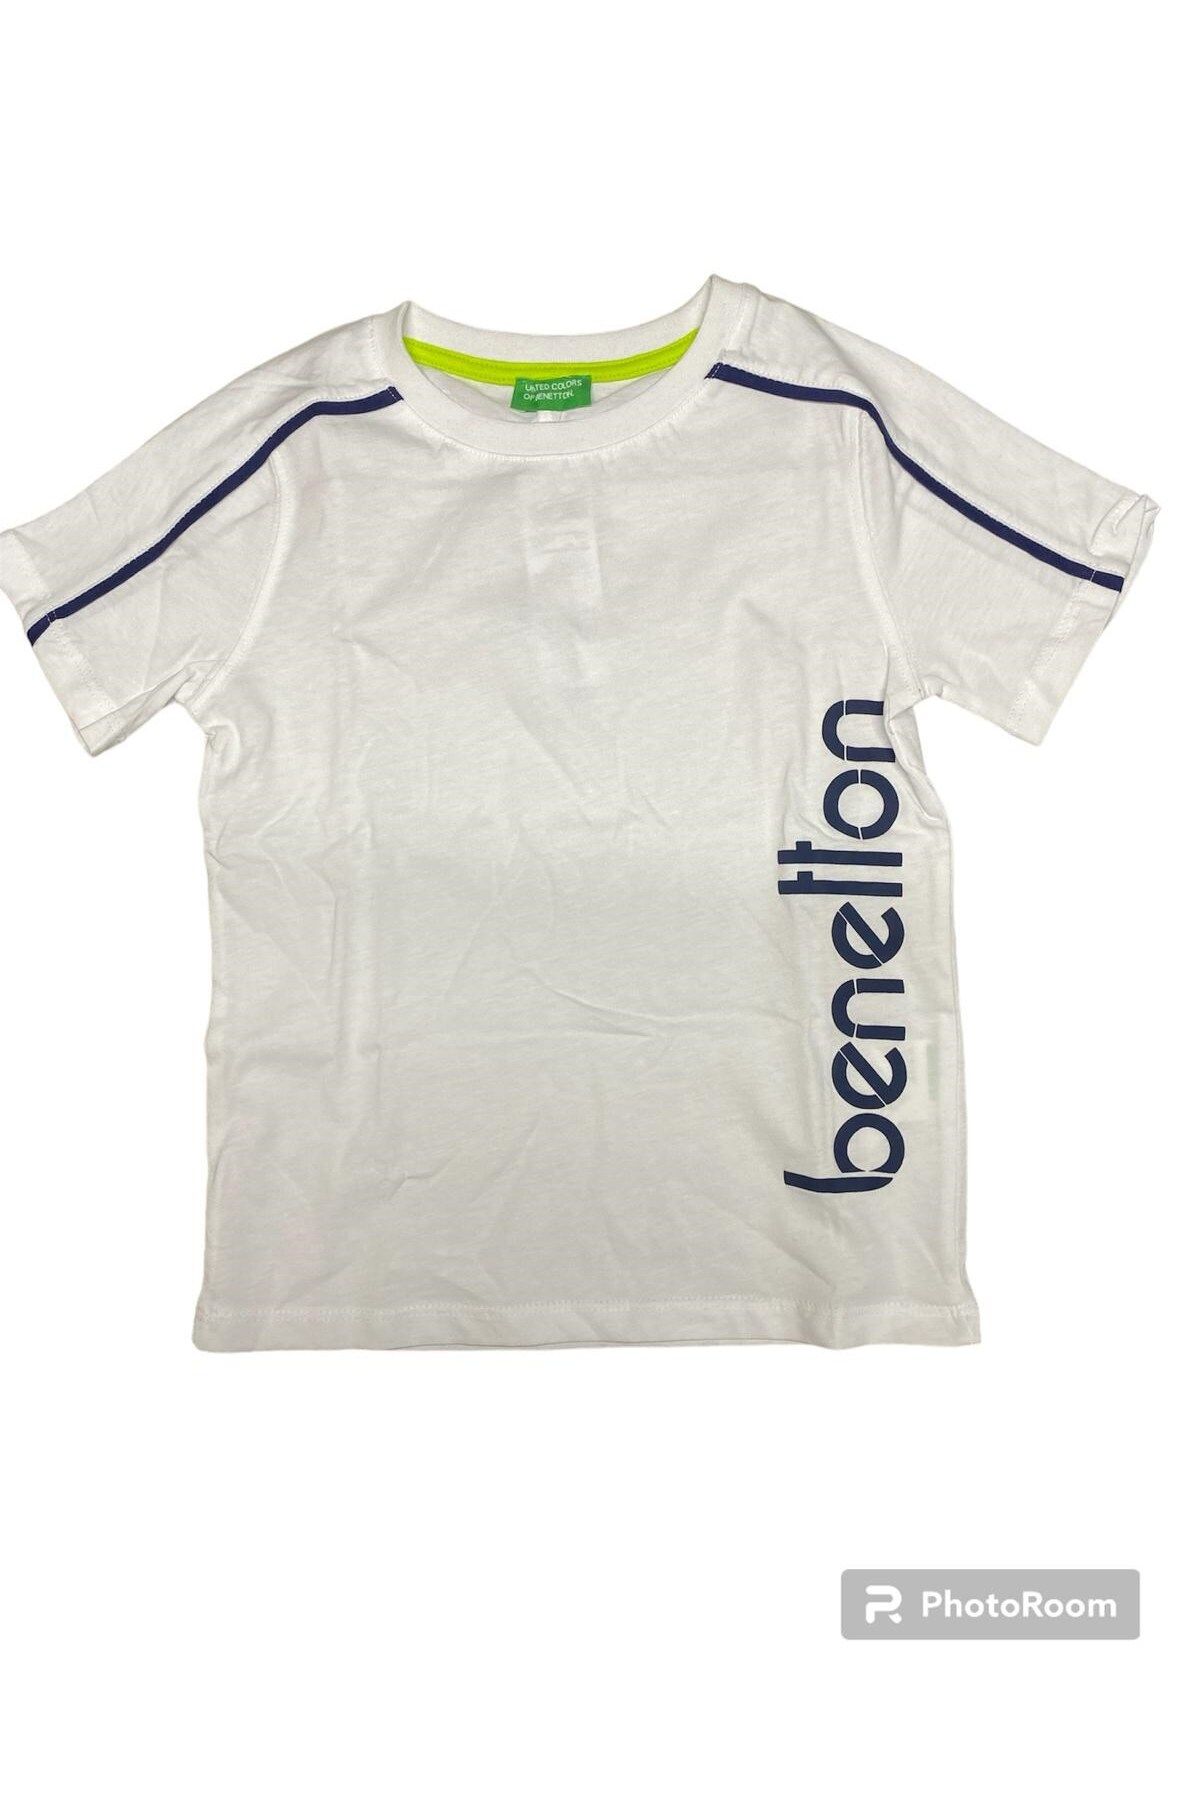 Benetton Erkek Çocuk Tişört